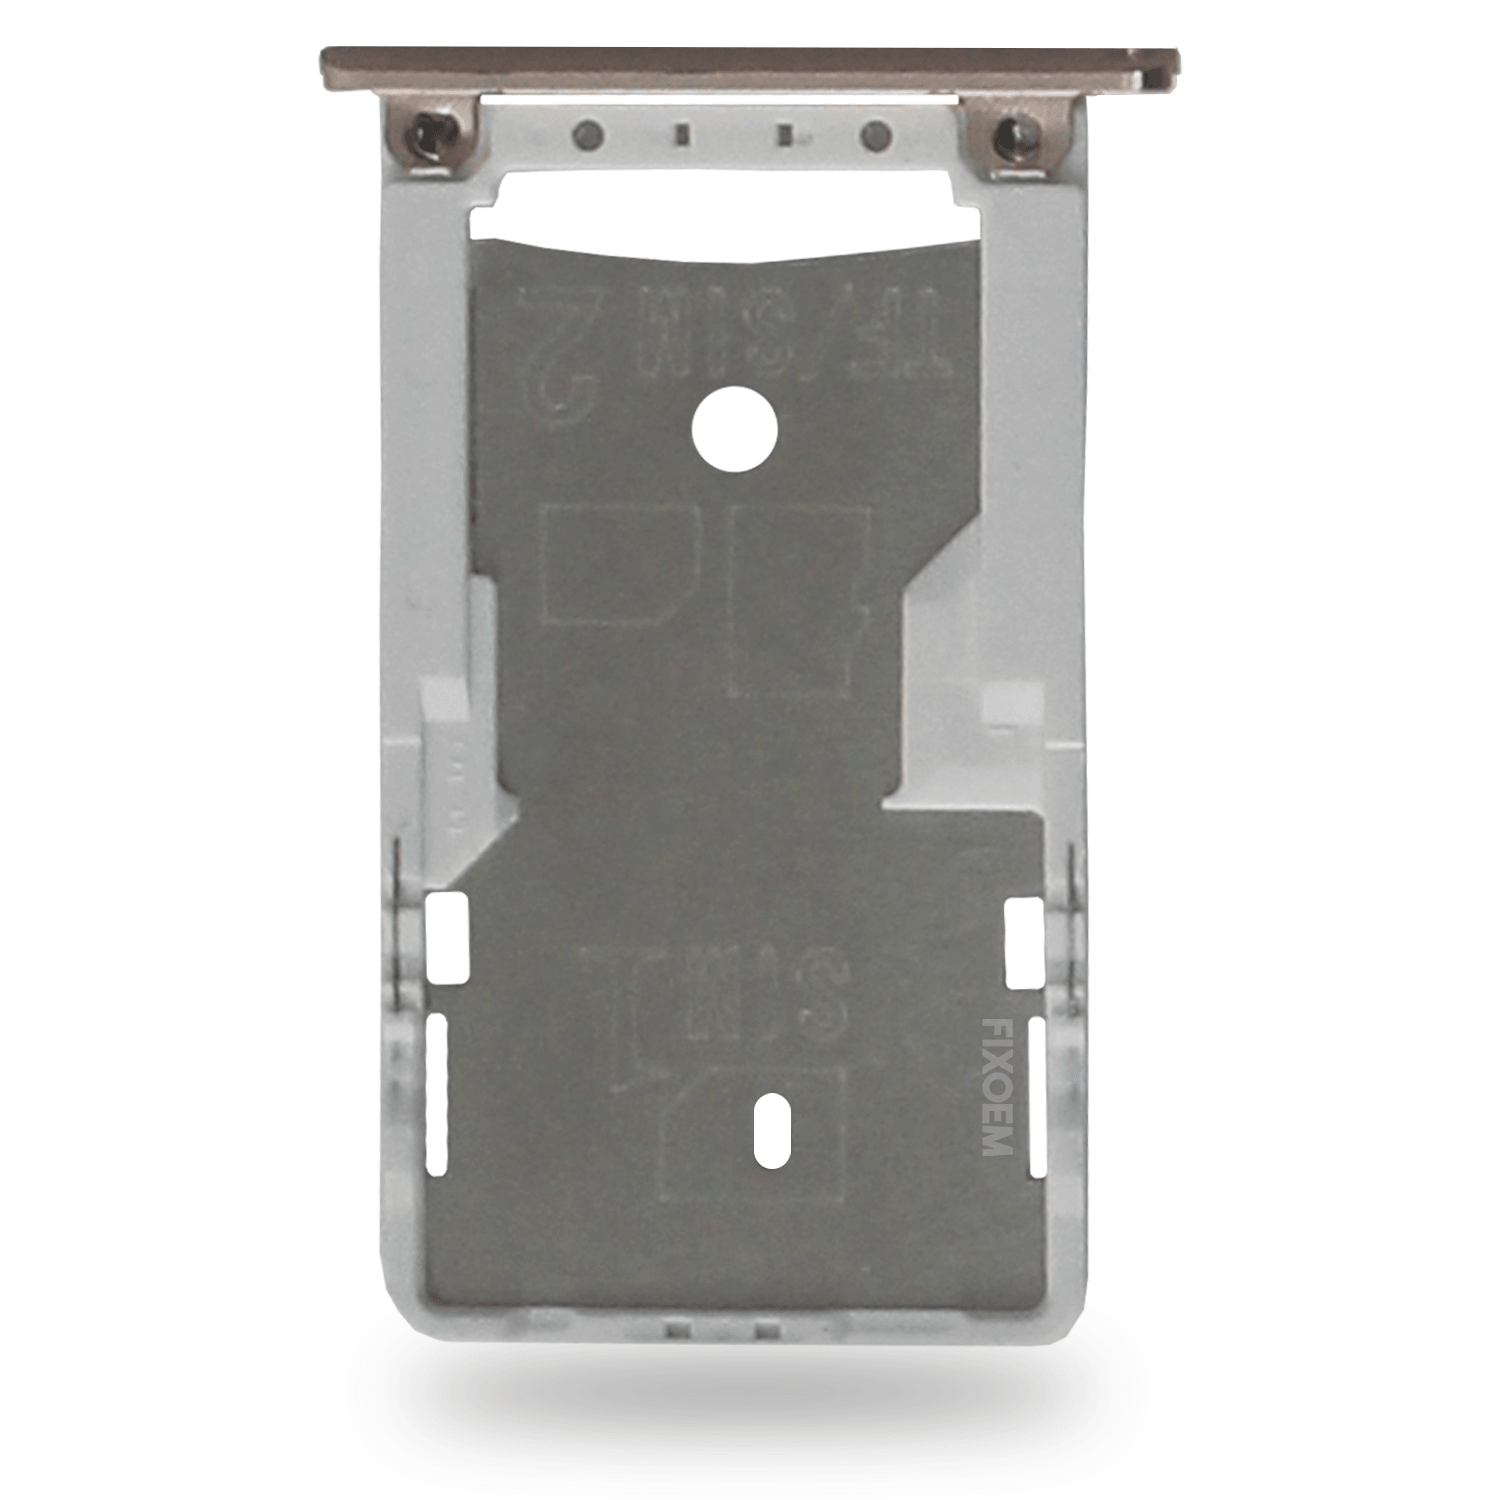 Charola Sim Xiaomi Redmi 3S 3X 3 a solo $ 50.00 Refaccion y puestos celulares, refurbish y microelectronica.- FixOEM